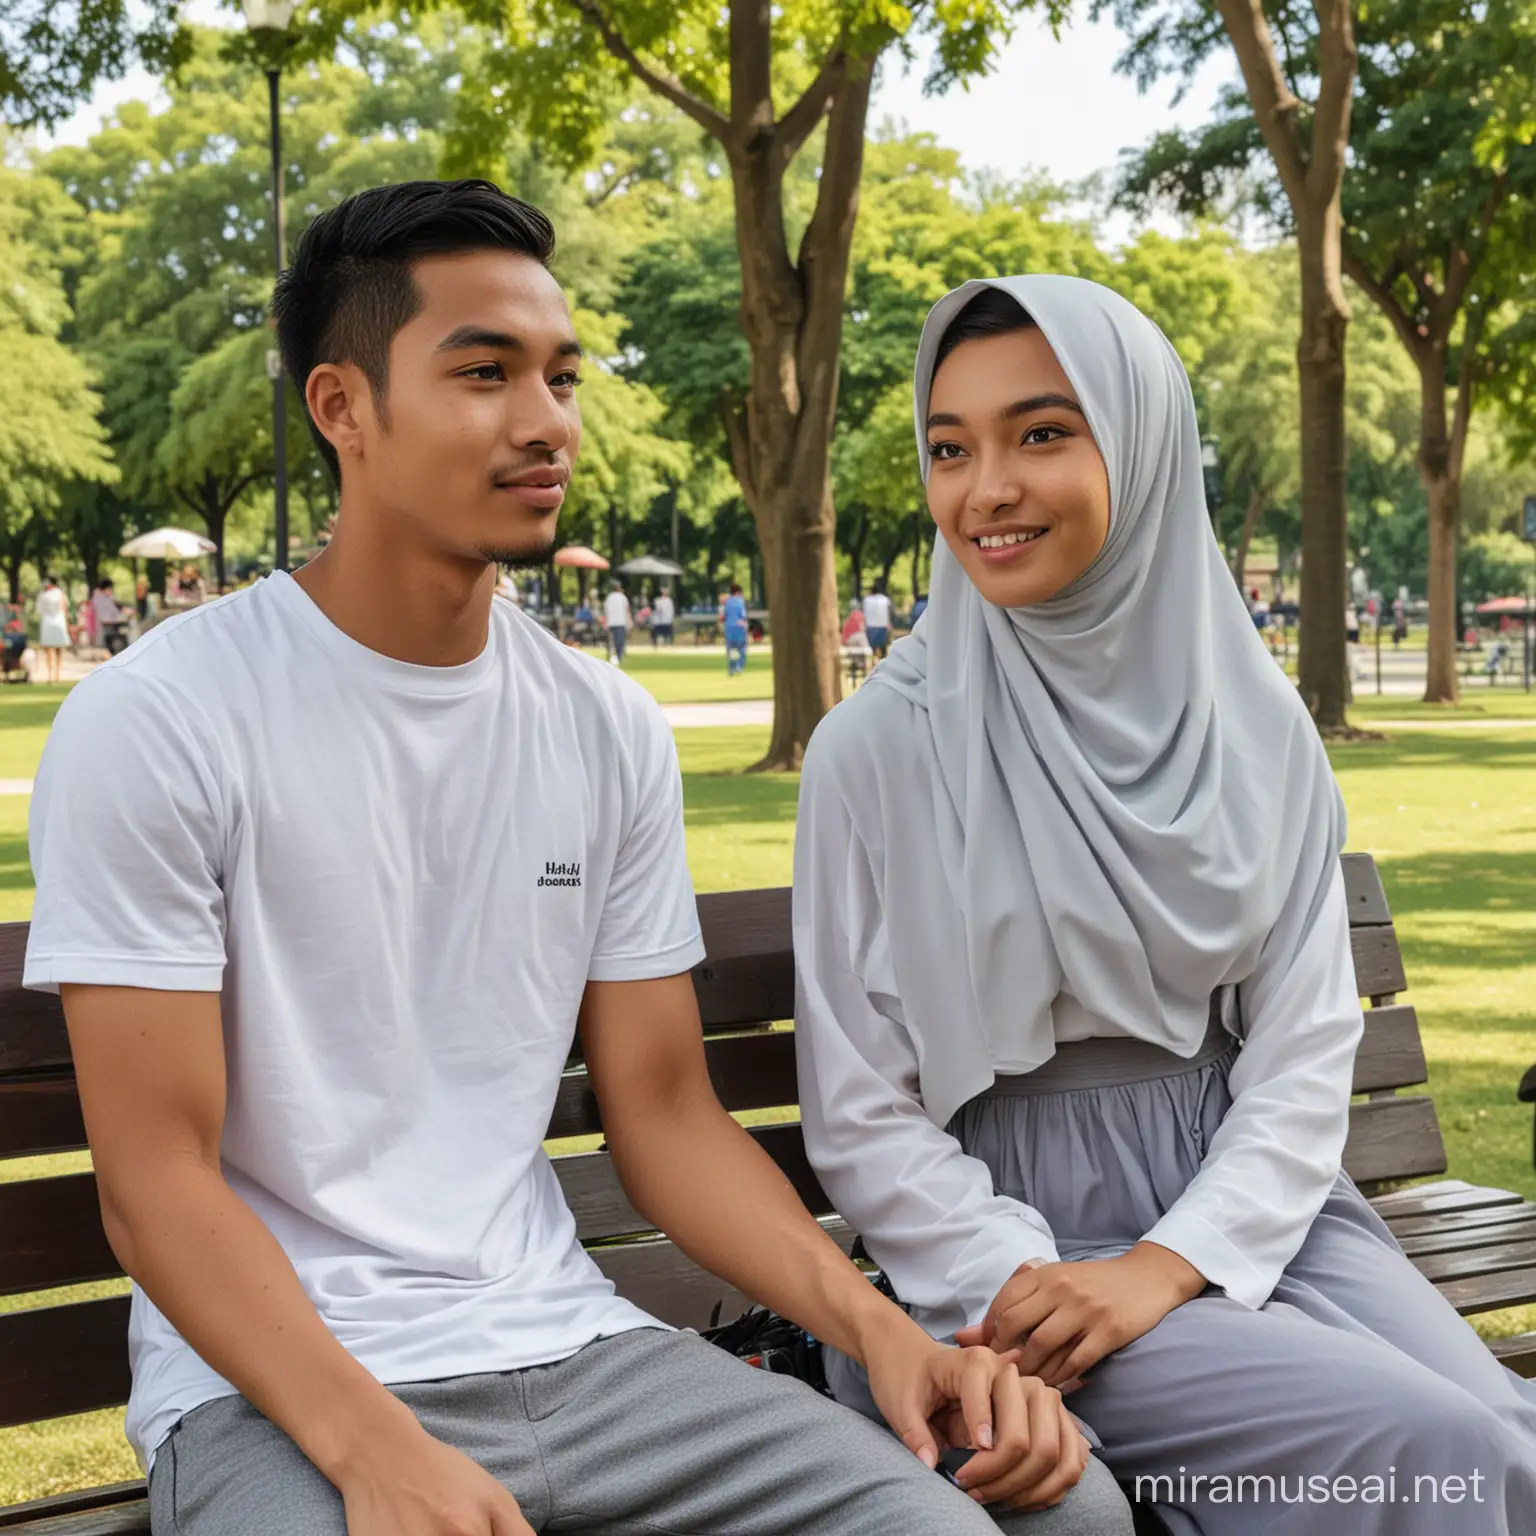 Seorang pria indonesia umur 25 tahun,rambut pendek,baju kaos putih sedang duduk di kursi taman bersama seorang wanita berjilbab,baju muslim panjang,lokasi sebuah taman 